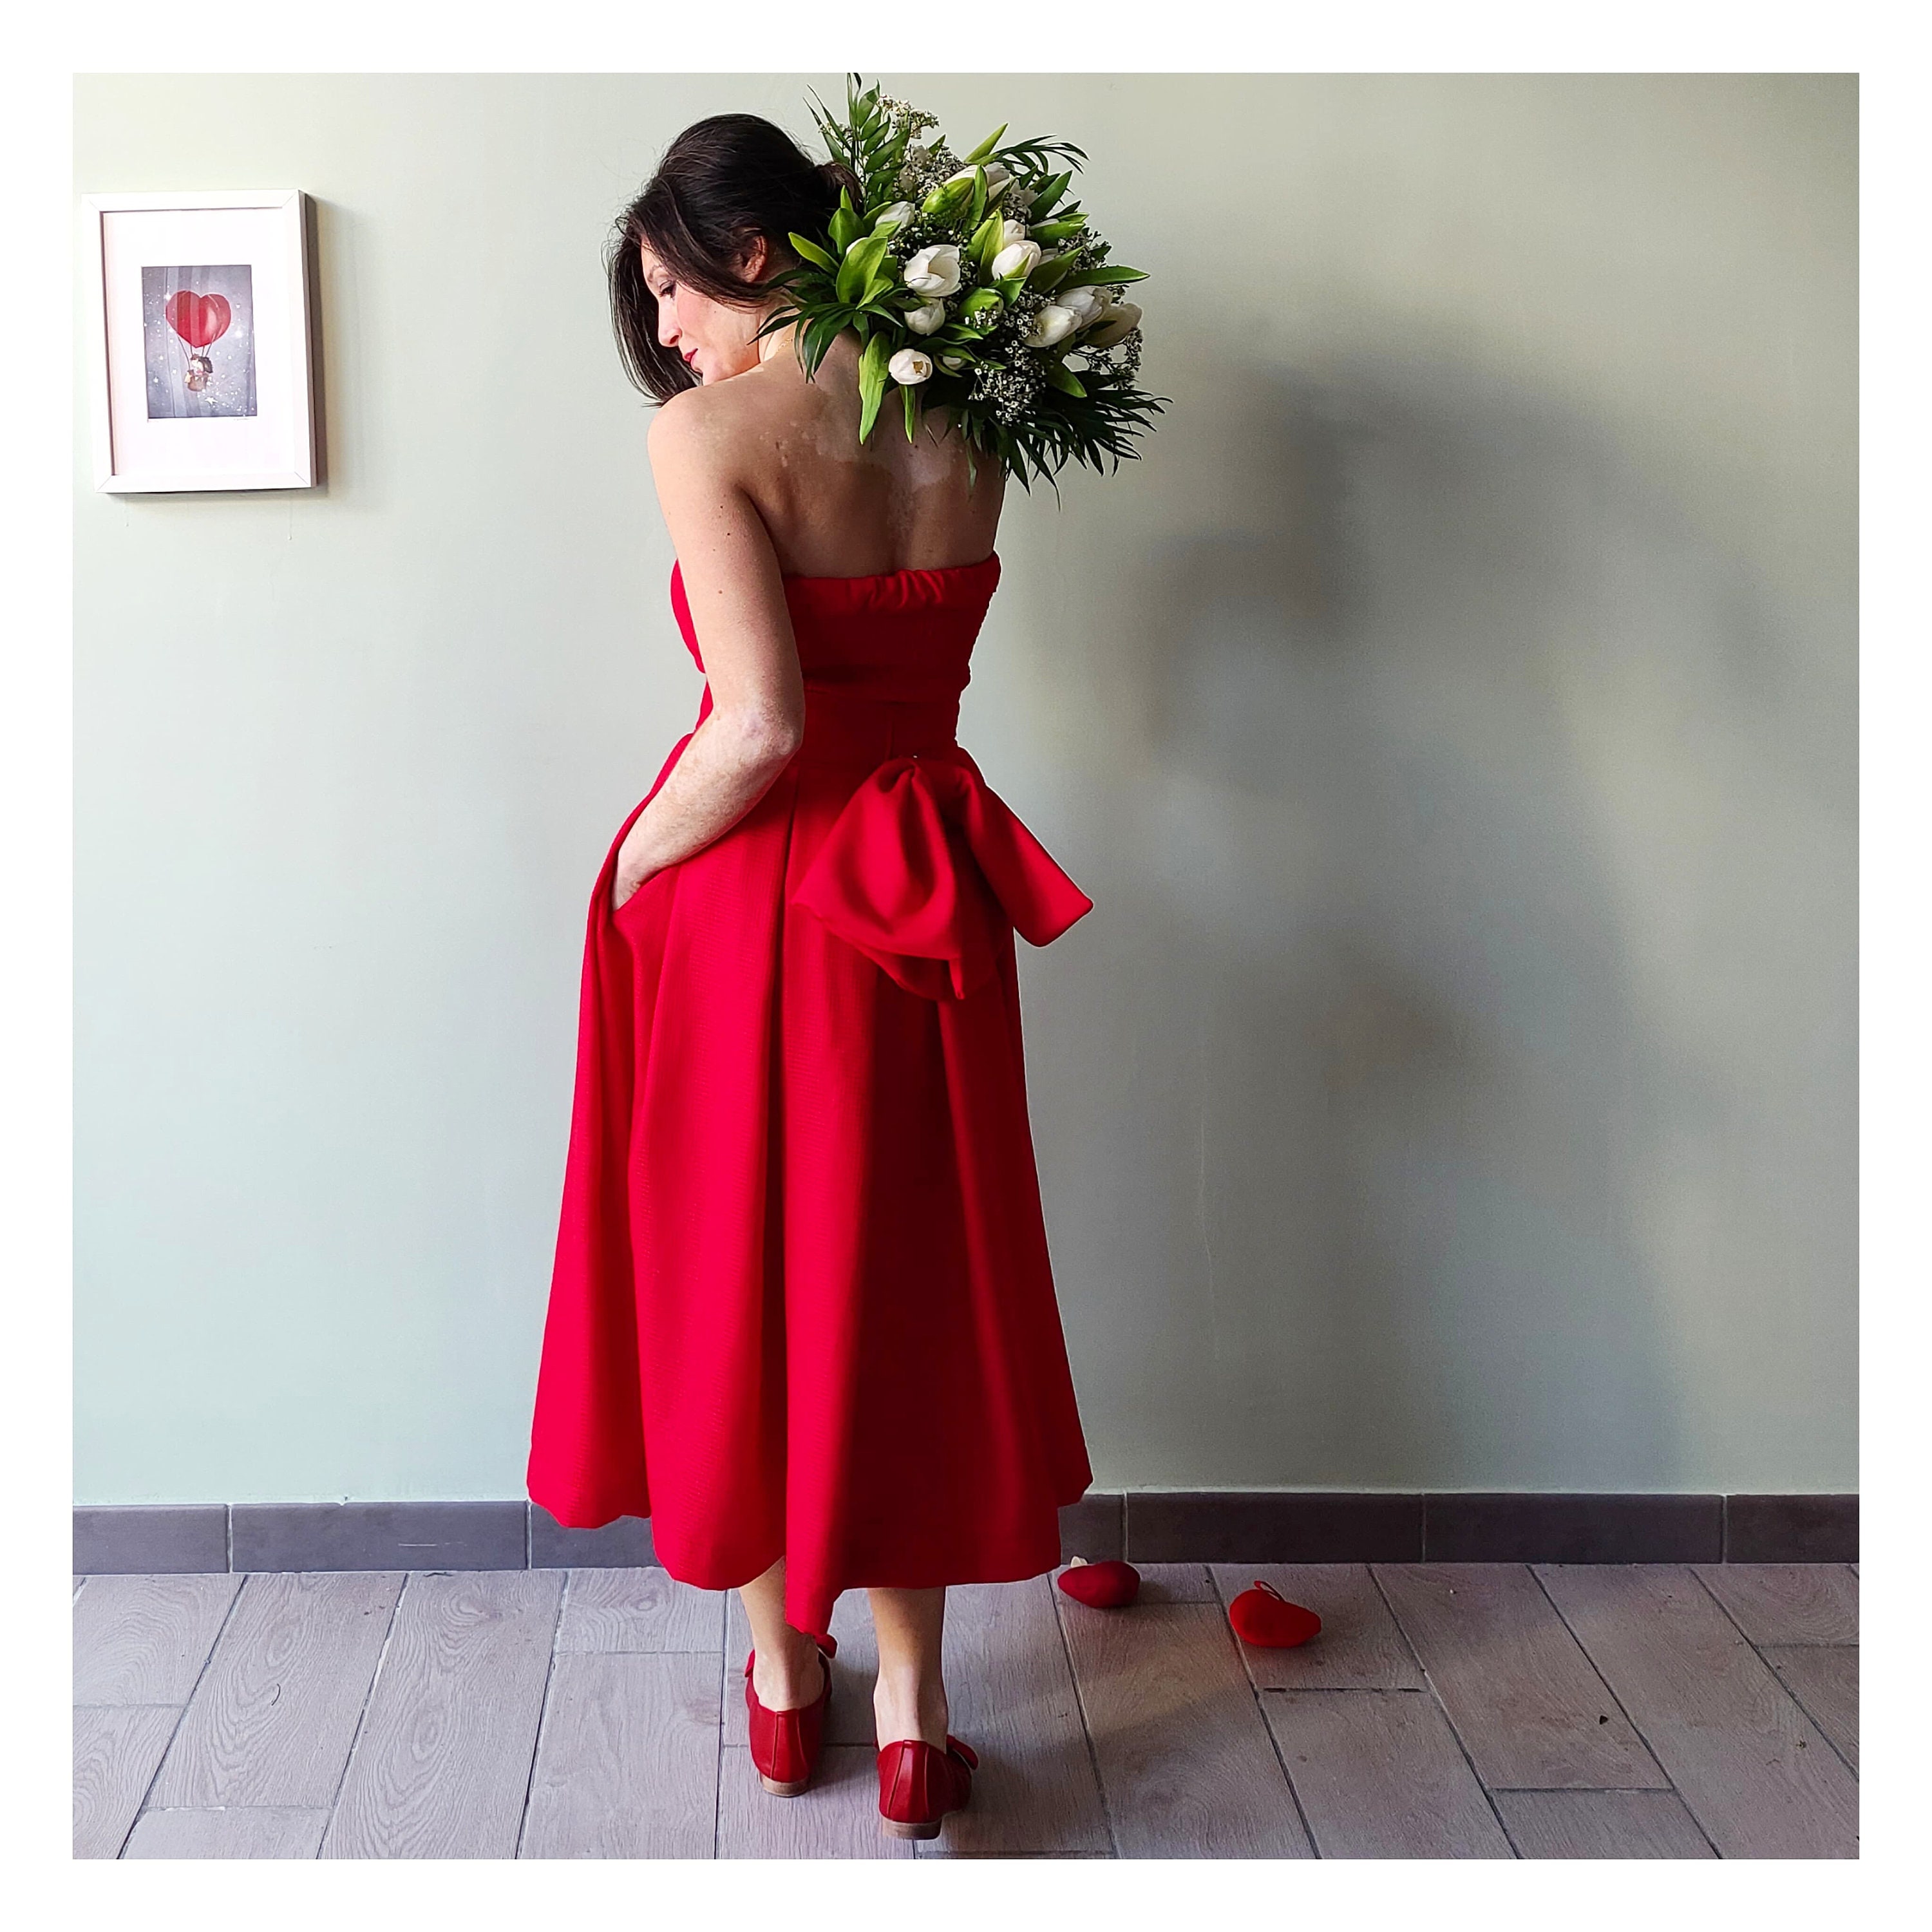 Faldas rojas: guía de compra, alternativas